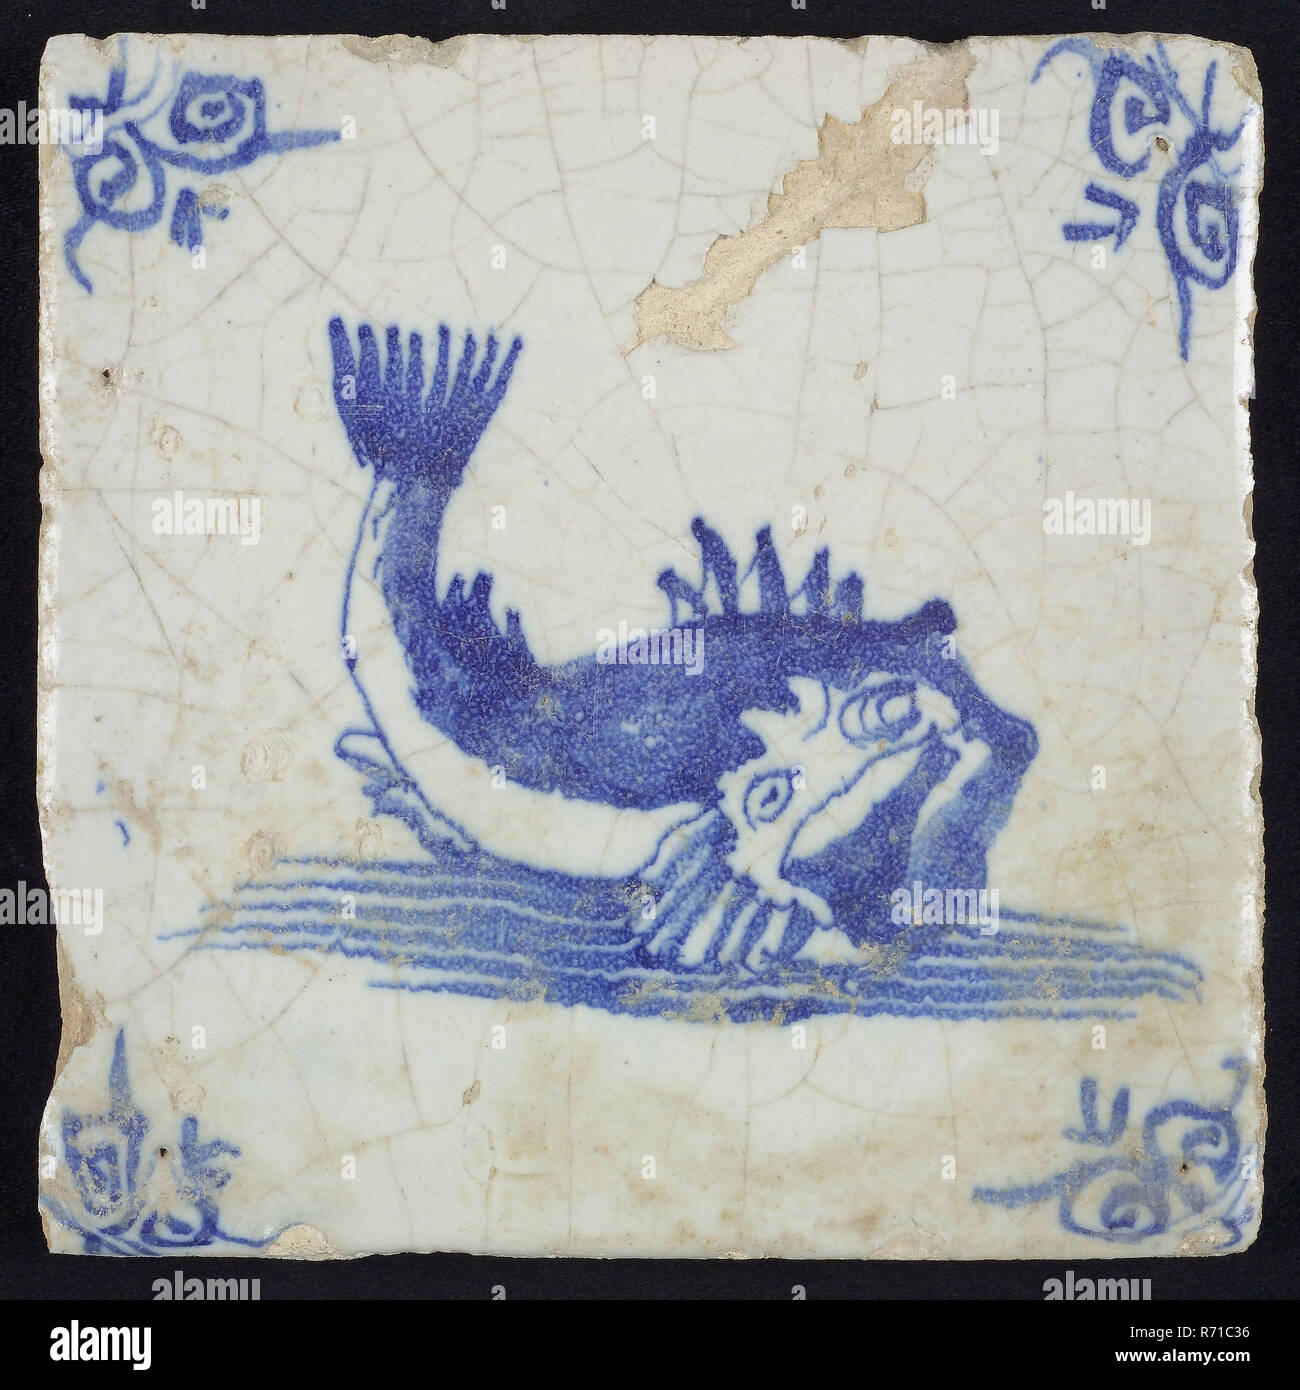 Tier Fliesen, unbekannte Fische im Wasser auf der rechten Seite mit offenem Schnabel und Ringelschwanz, Blau auf Weiß, Ecke Motiv Ochsen Kopf, wandfliese Kachel skulptur keramik Steingut glasiert, gebackene 2 x Glasierte lackiert Stockfoto